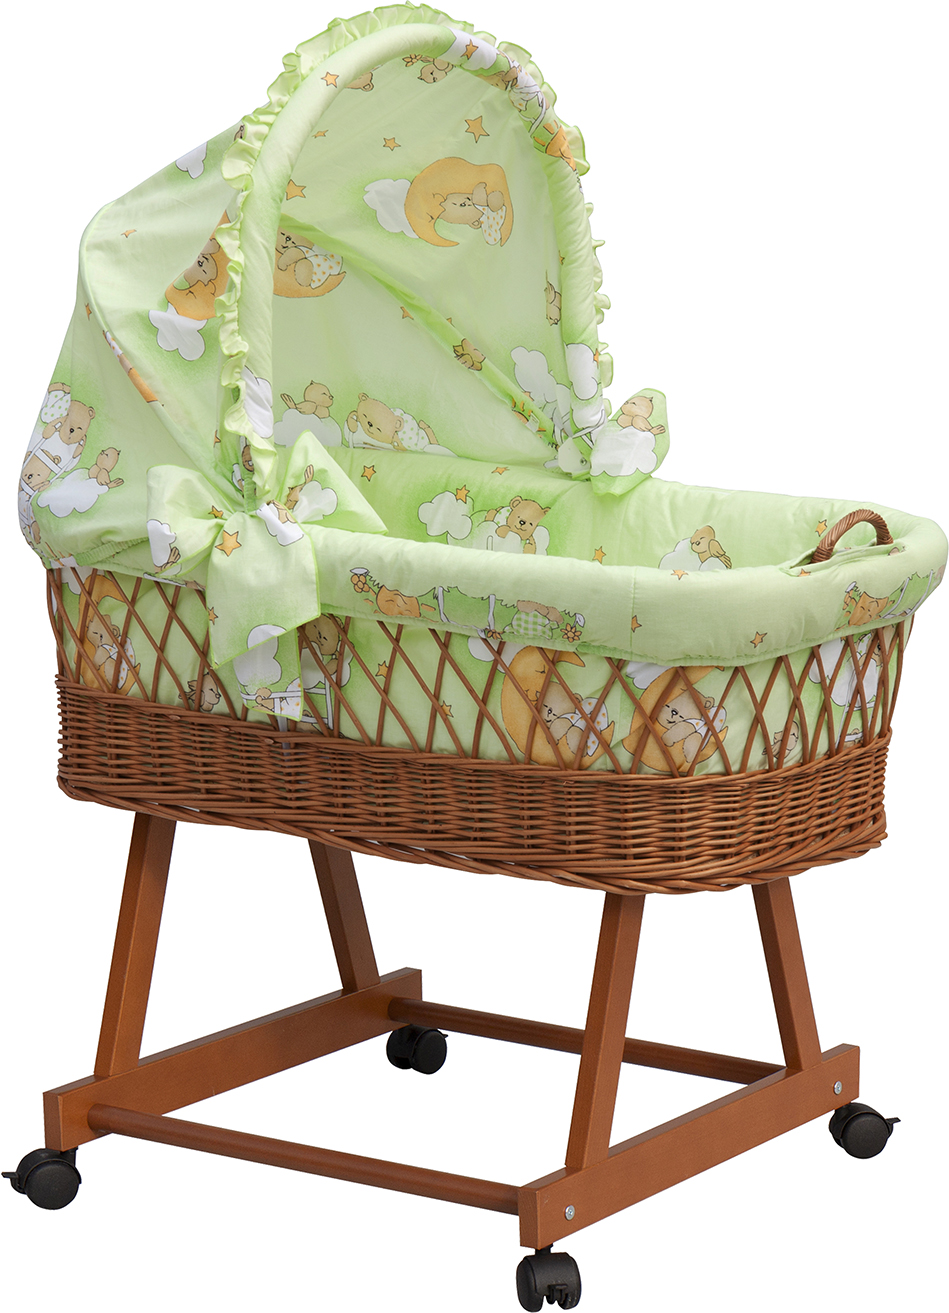 Košík pro miminko s boudičkou Mráček - zelená